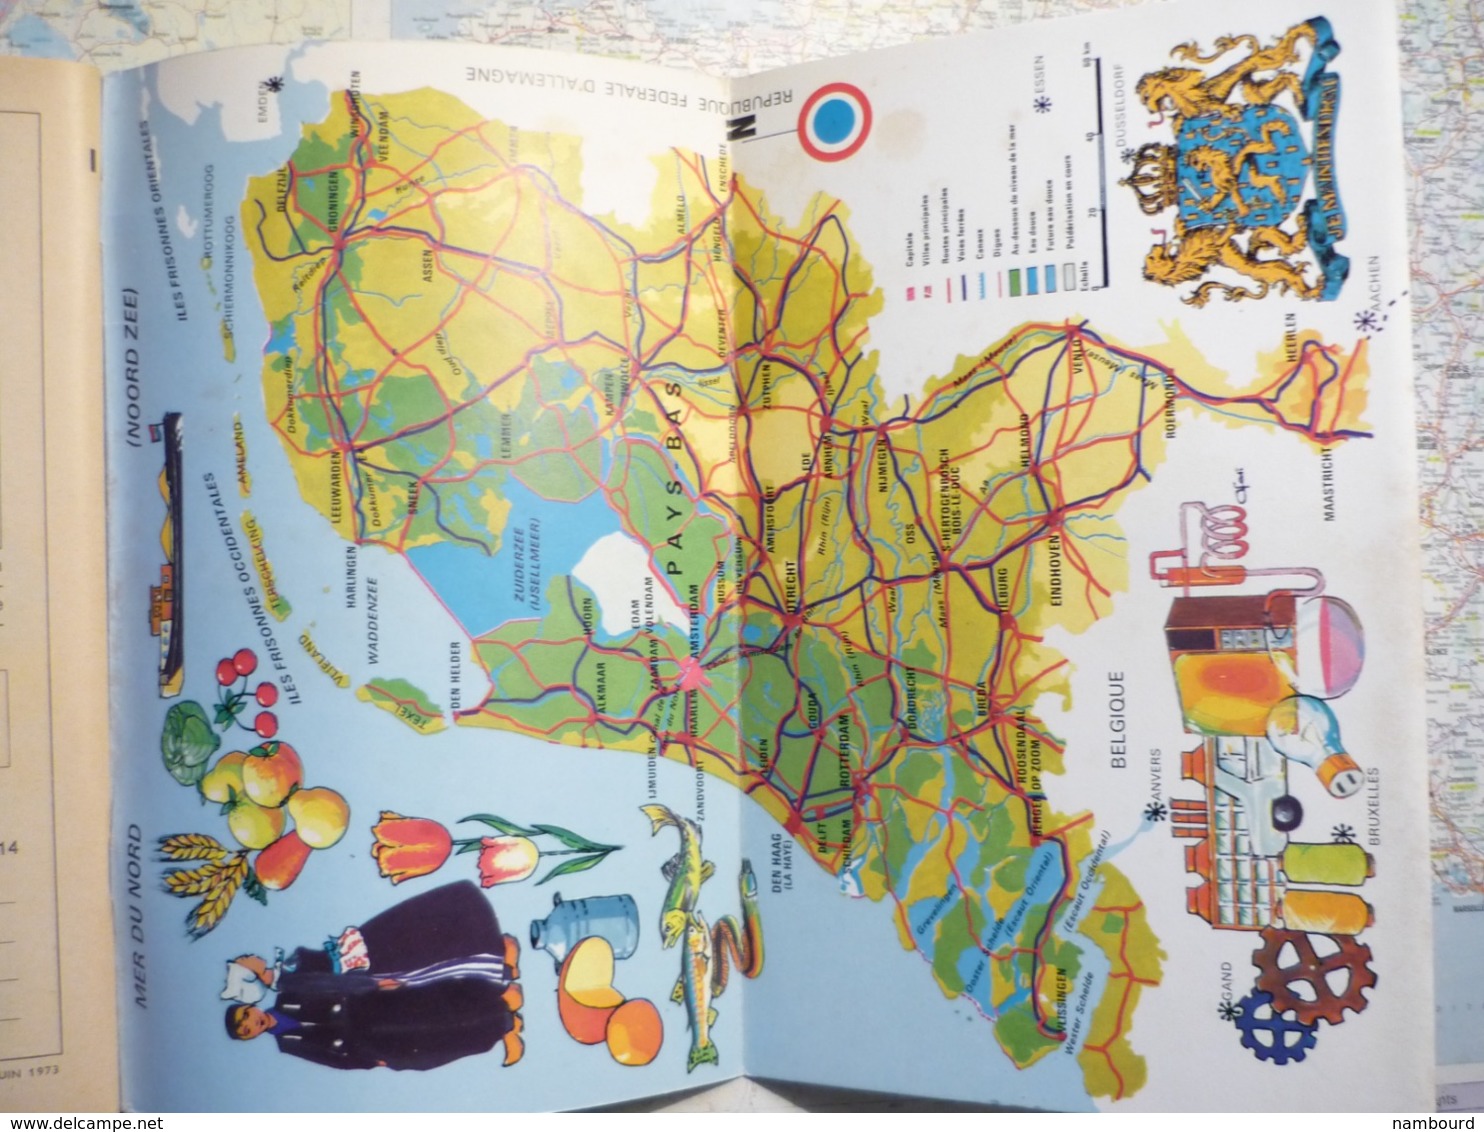 Tour du Monde Association Française de Géographie Pays-Bas N°164 11 Juin 1973